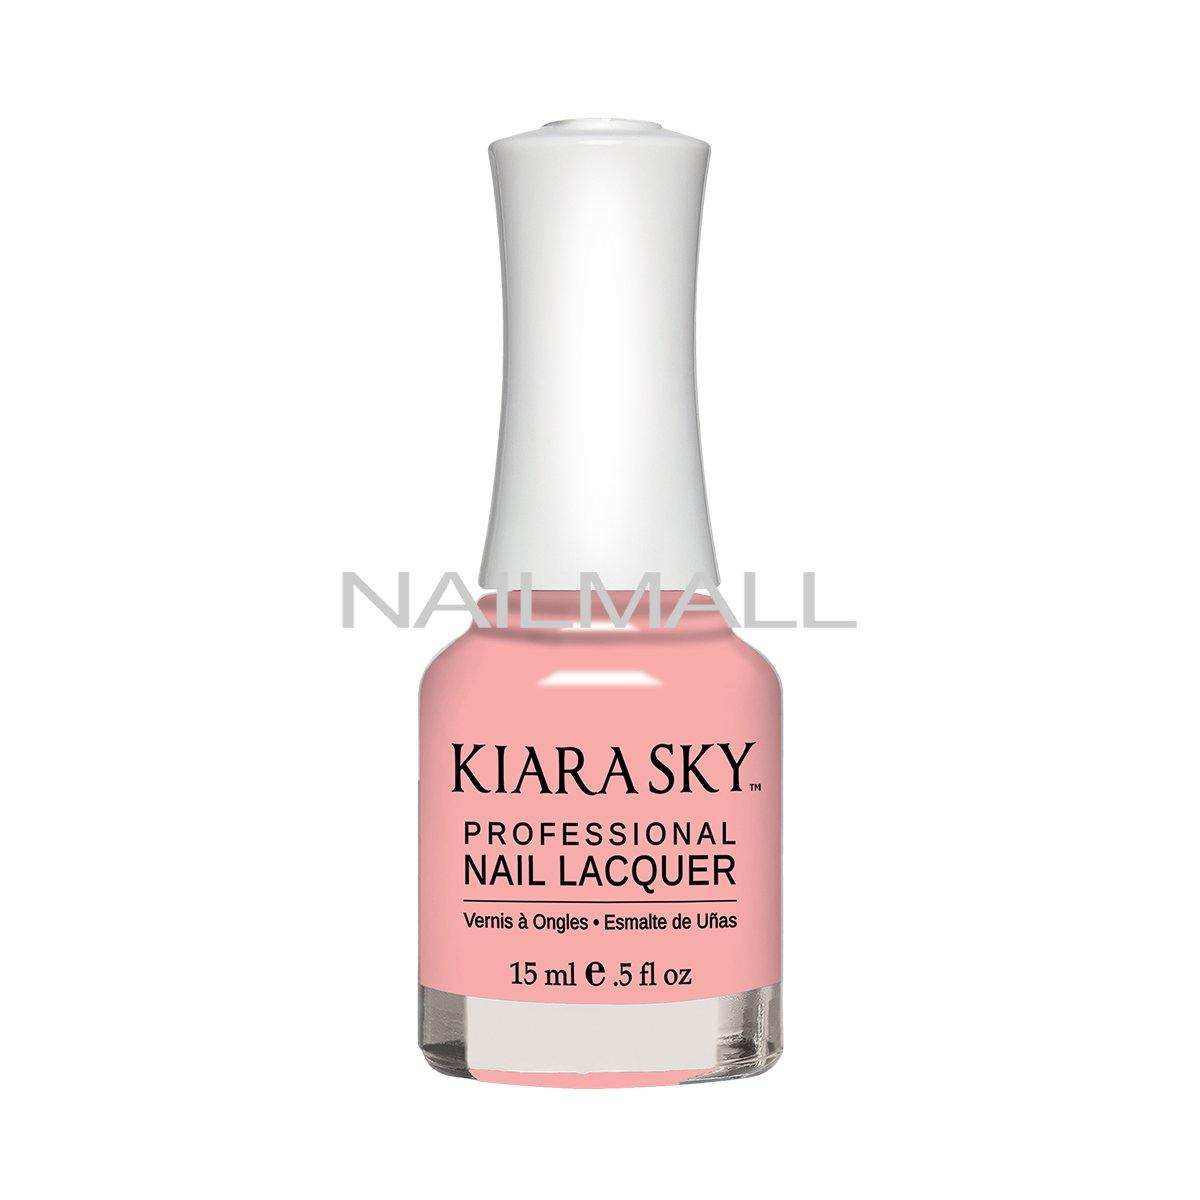 Kiara Sky Nail Lacquer - LUNAR OR LATER - N632